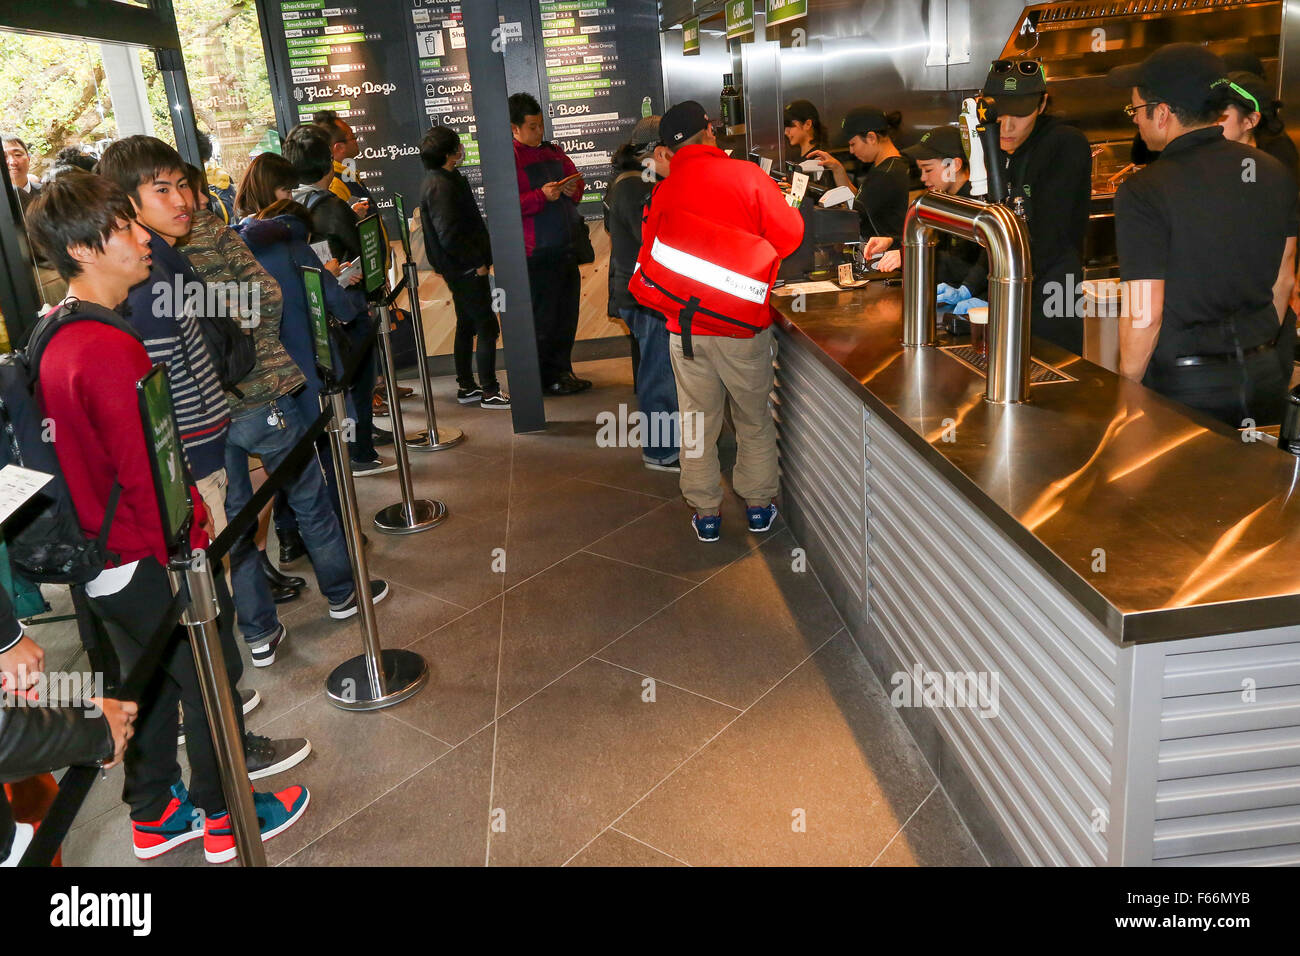 El personal del nuevo Burger restaurant Shake Shack tomar órdenes de los clientes durante la apertura del evento el 13 de noviembre de 2015, Tokio, Japón. Aproximadamente 400 personas se alinearon para obtener una primera degustación de la ShackBurger, SmokeShack o choza cago Perro. Nuevas aperturas de nosotros las cadenas alimentarias son un gran negocio en Japón, y fue presentado en la tienda muestra desayuno japonés. Según los organizadores, la gente comenzó a alinear a partir de las 9:30 pm de la noche anterior. © Rodrigo Reyes Marin/AFLO/Alamy Live News Foto de stock